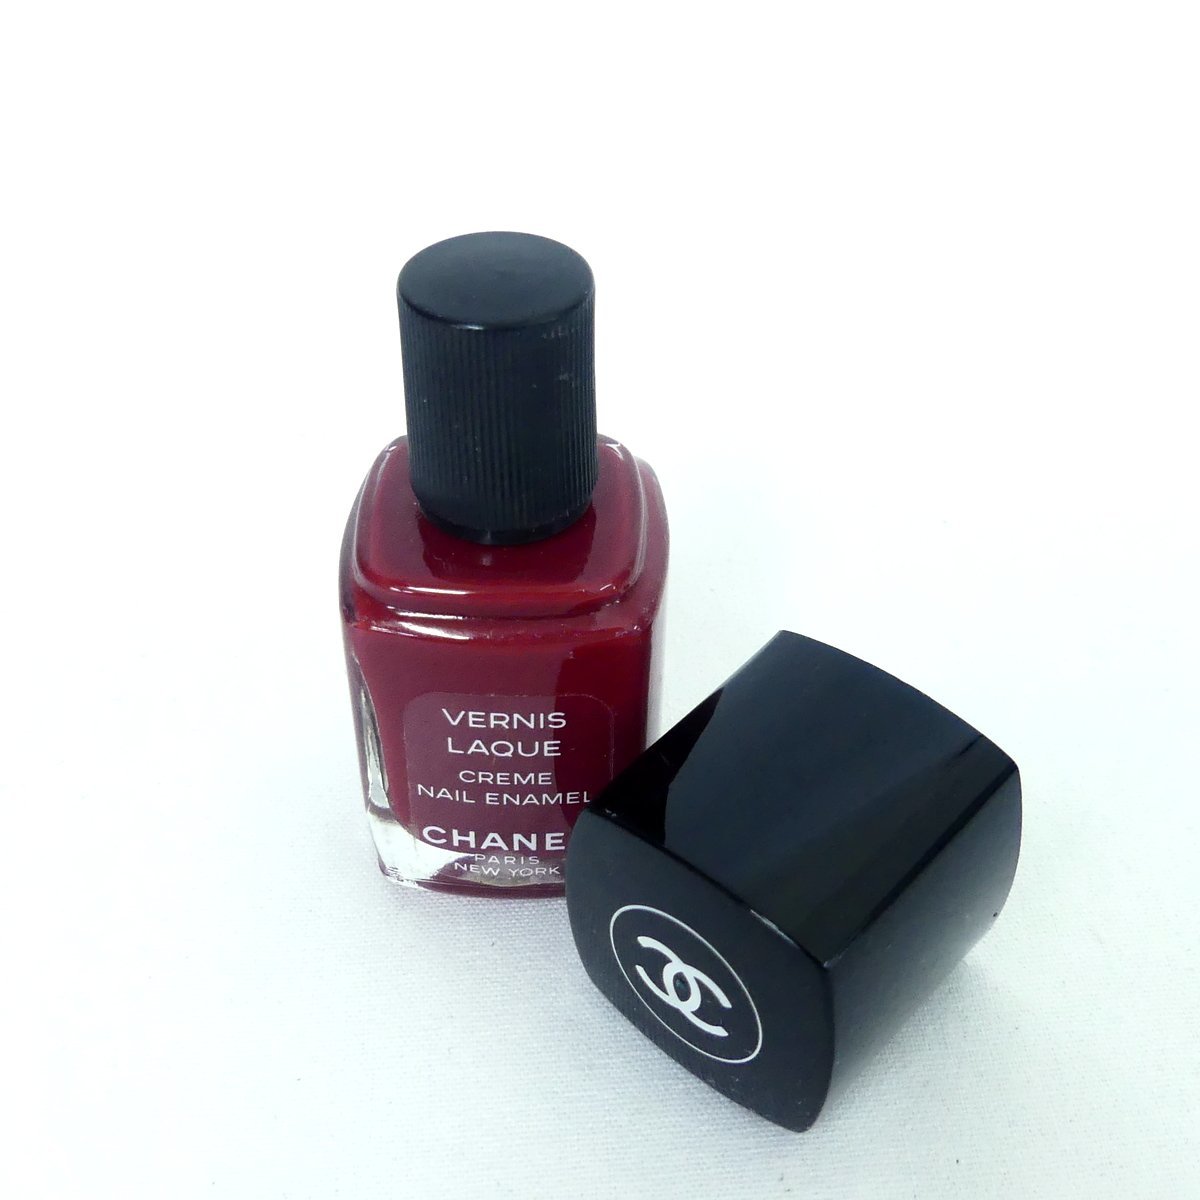 CHANEL Chanel VERNIS LAQUE ногти эмаль ROSE DAWN 13ml прекрасный товар /2309C